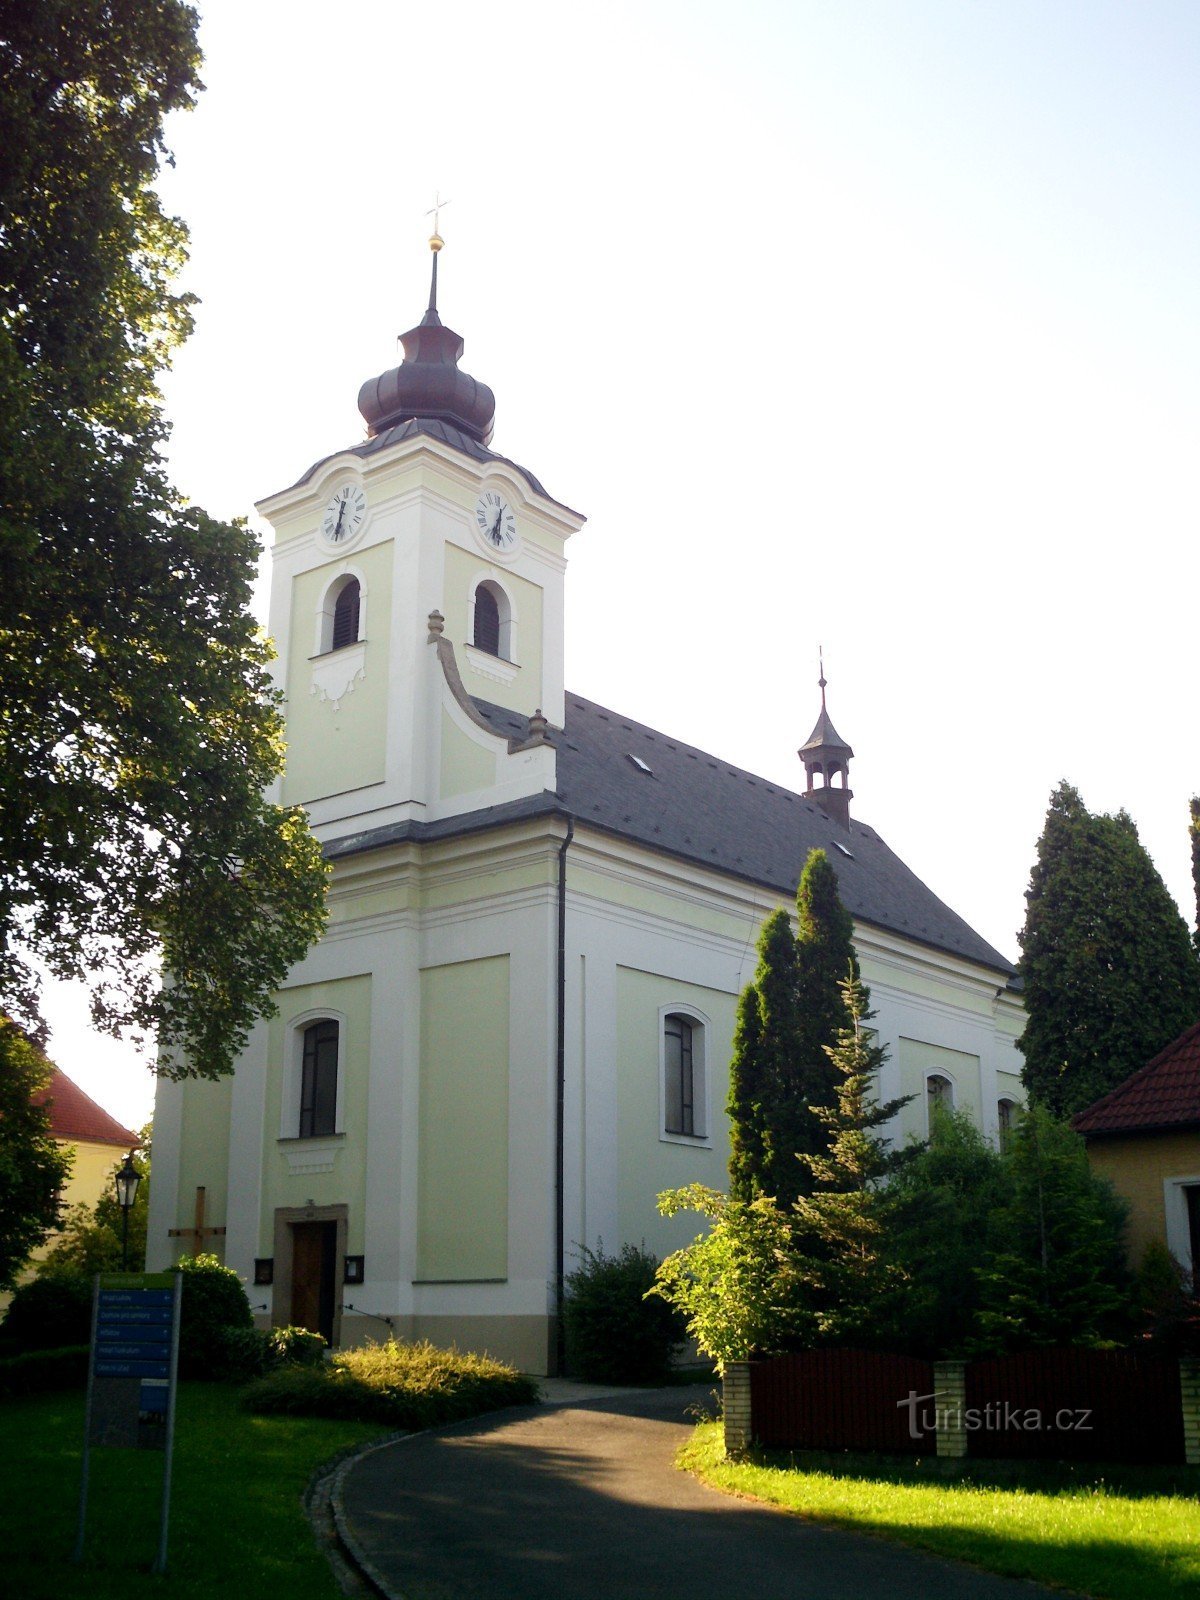 εκκλησία του αγ. Ιωσήφ από το 1810